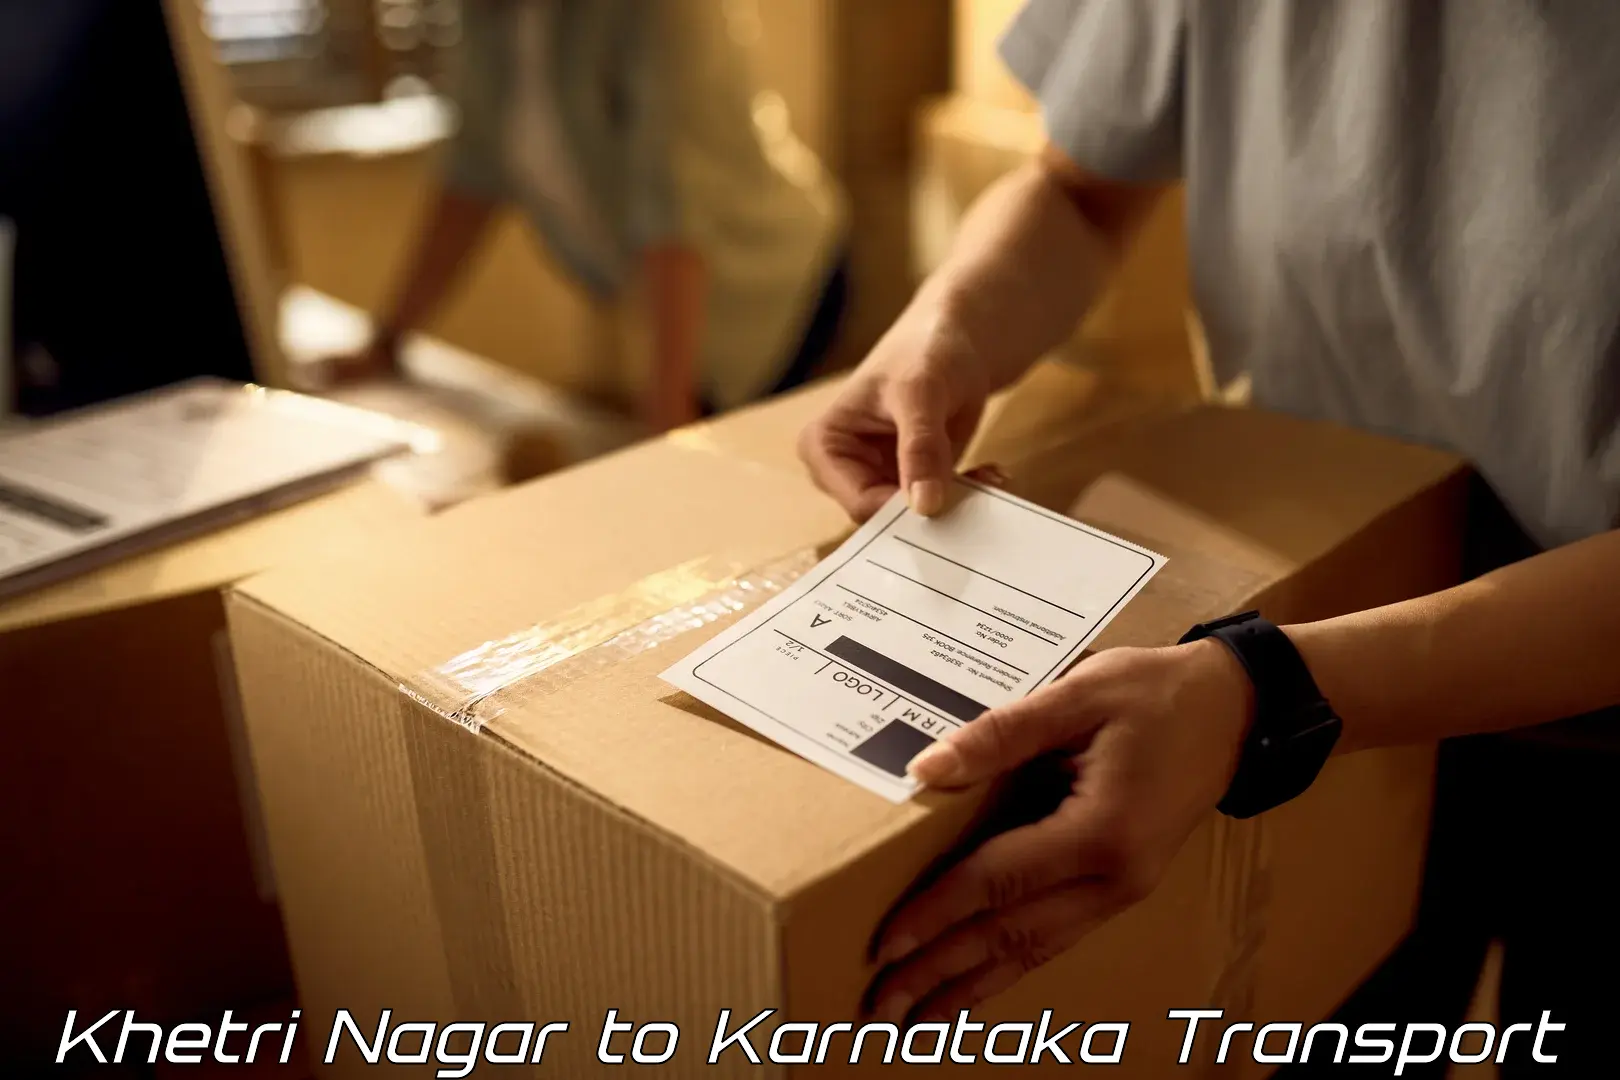 Nearby transport service Khetri Nagar to Ramanathapura